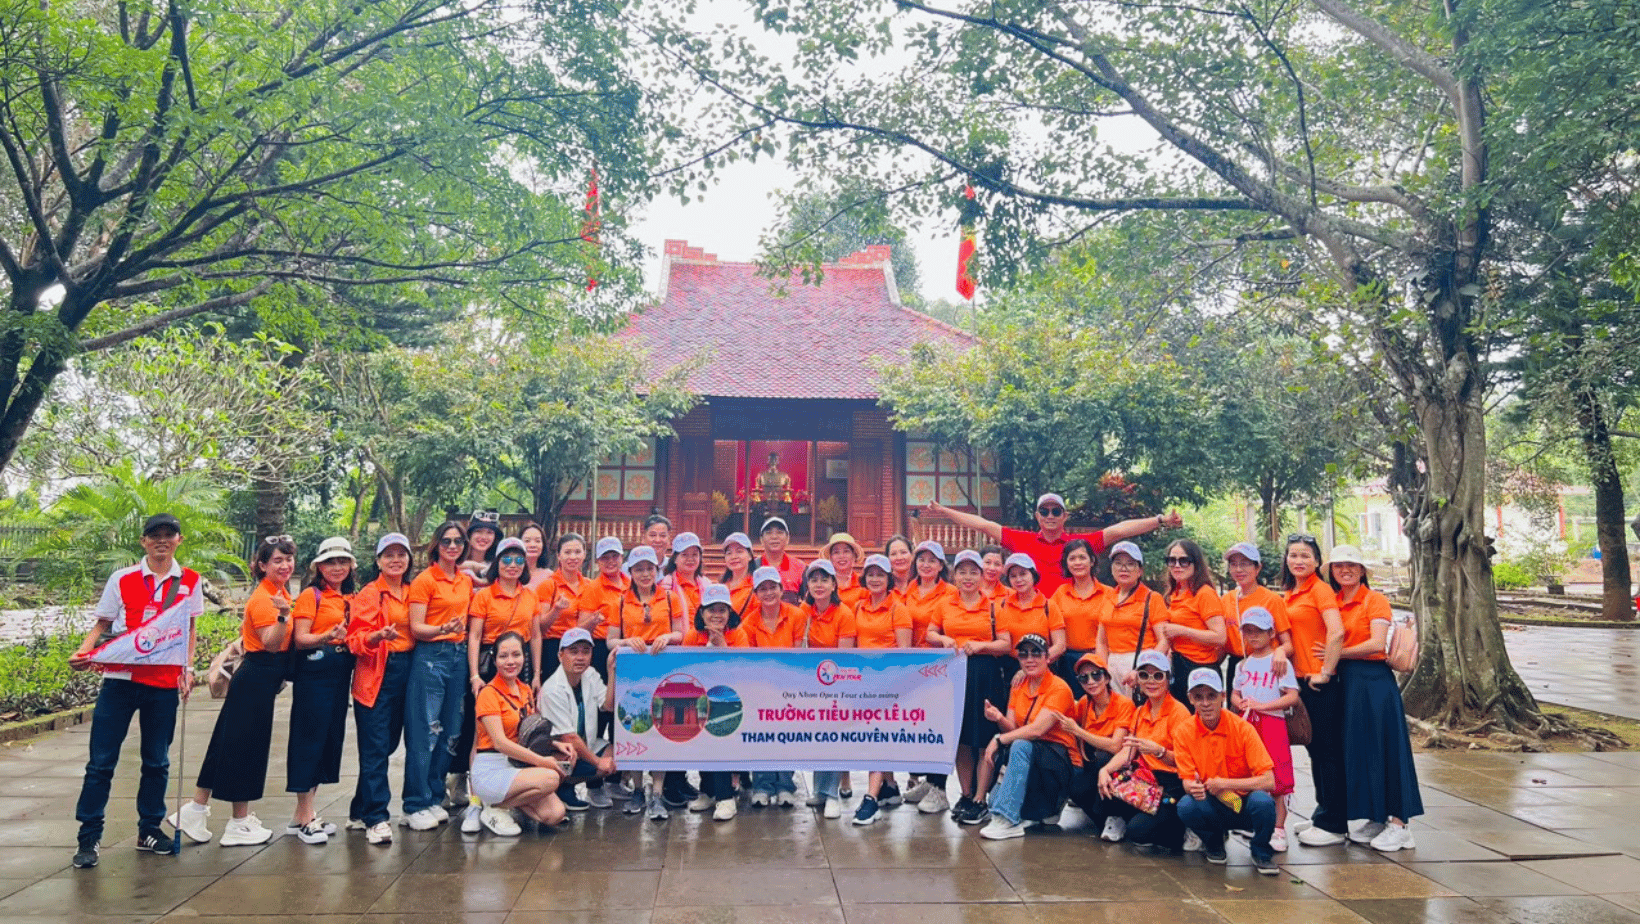 Tour Quy Nhơn - Cao Nguyên Vân Hòa - Kết hợp Teambuilding 1 ngày